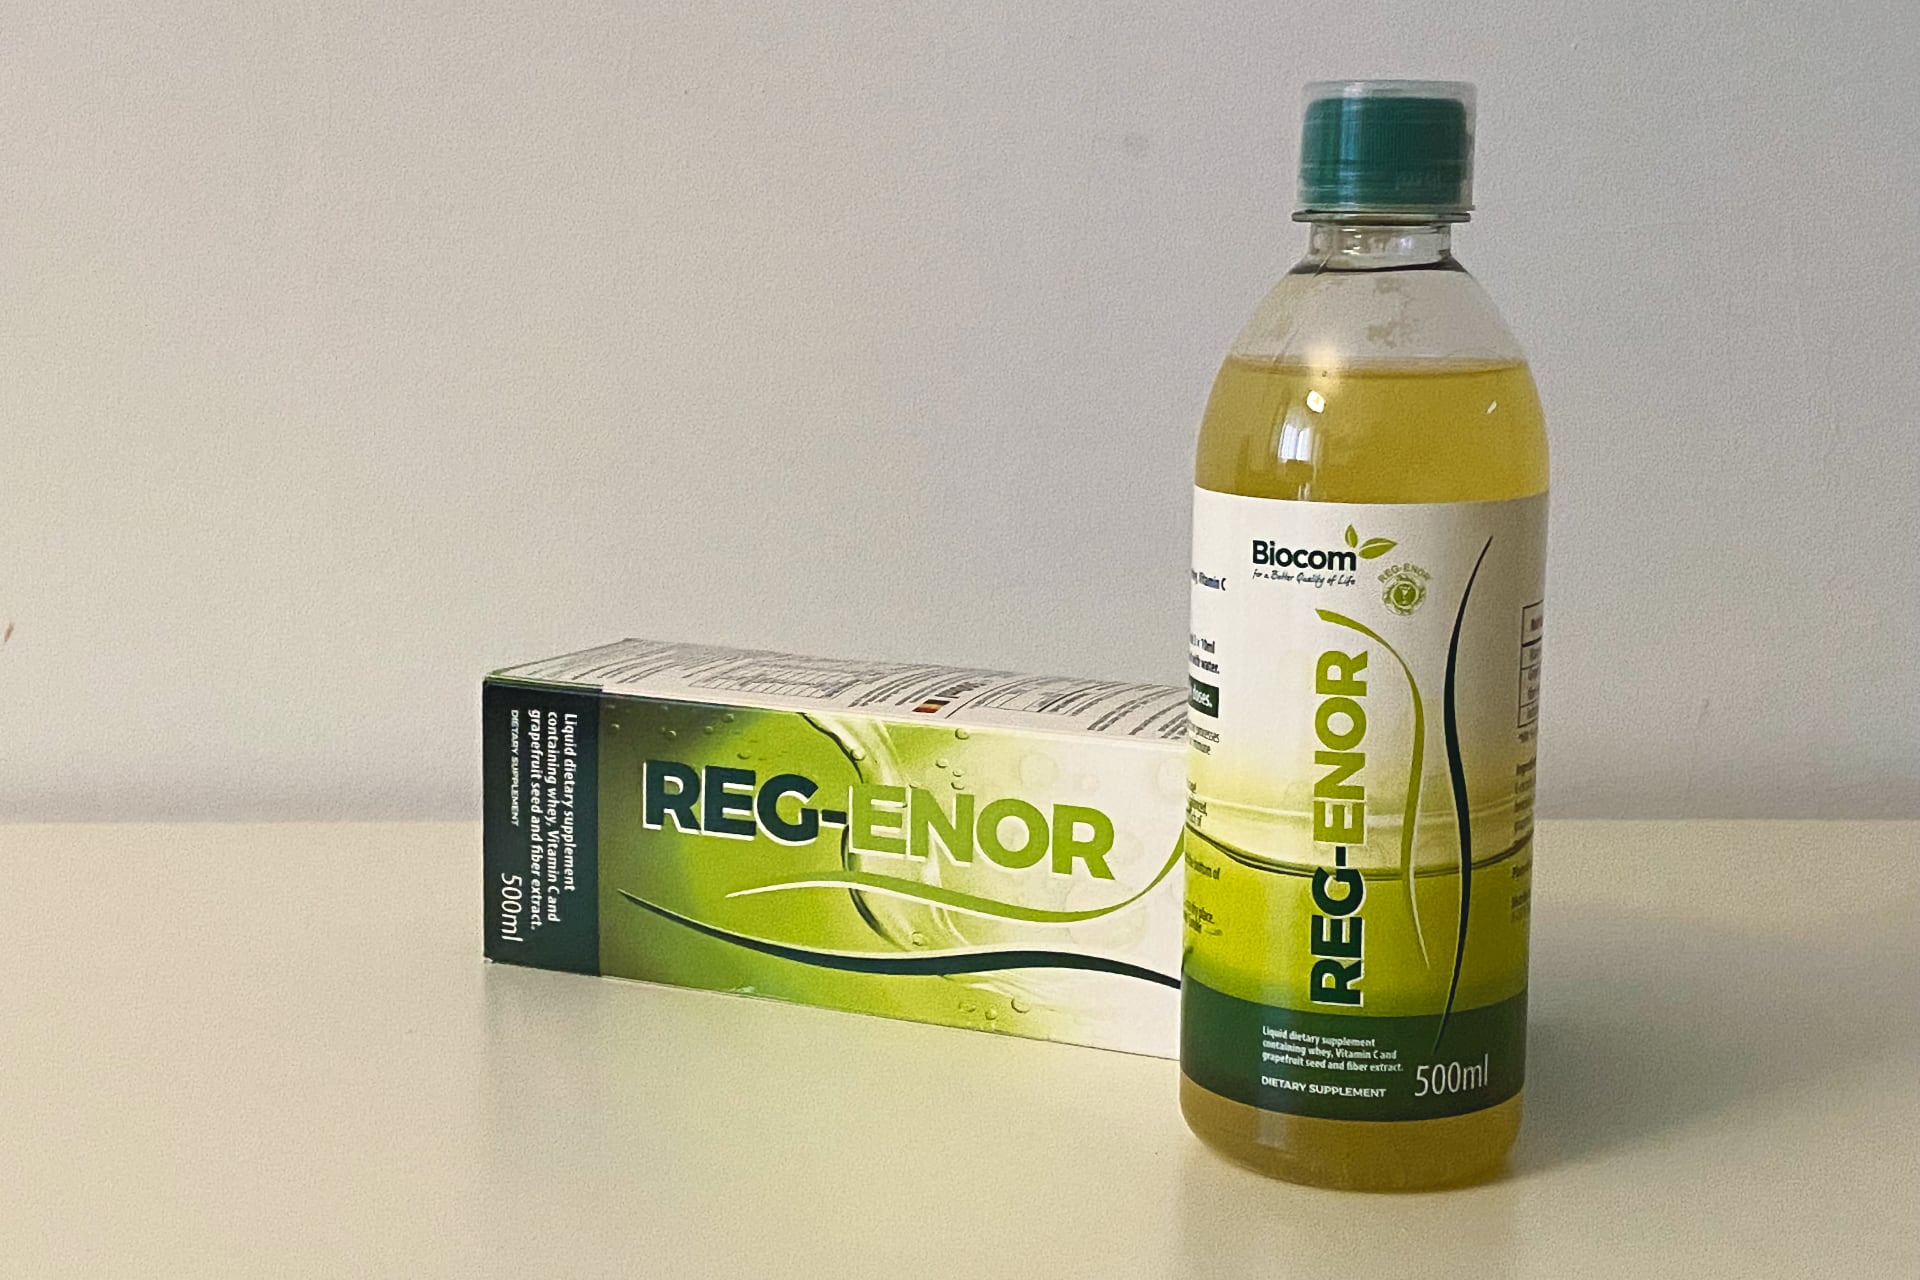 Biocom Reg-enor (Regenor) - ml - rendelés, online vásárlás - BioNagyker webáruház